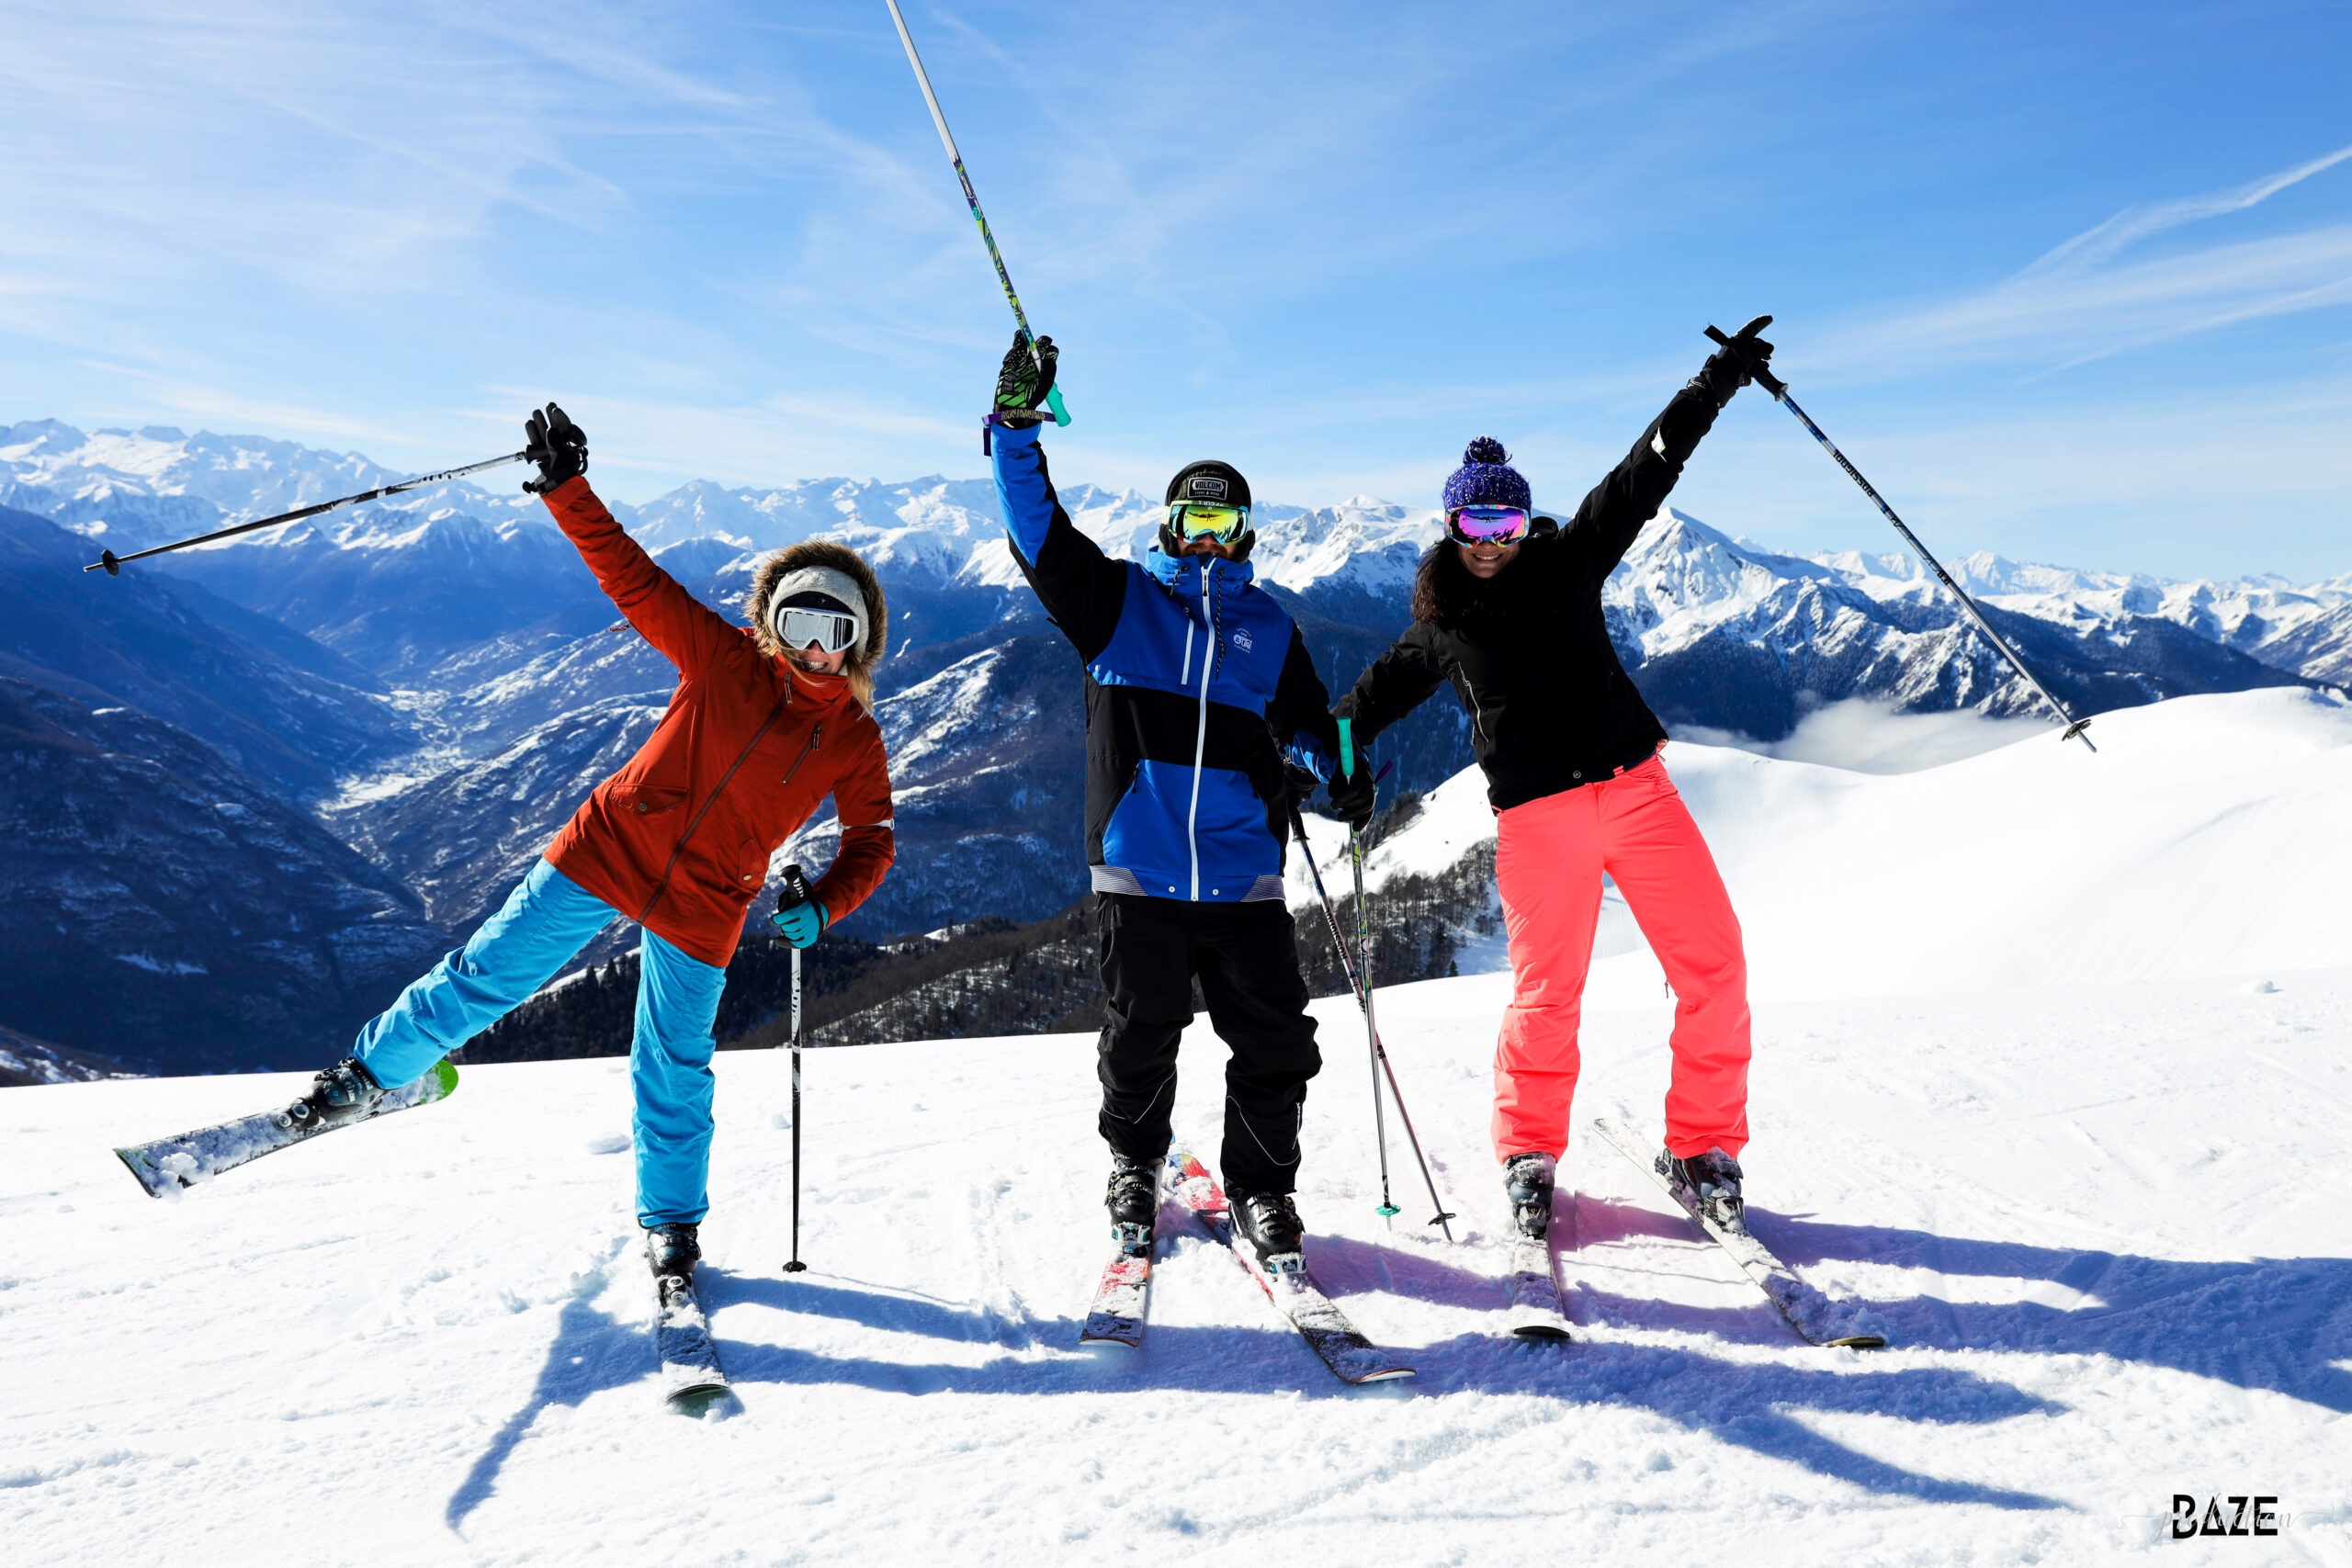 Les stations de ski amies sur les crête du mourtis pour passer un bon moment